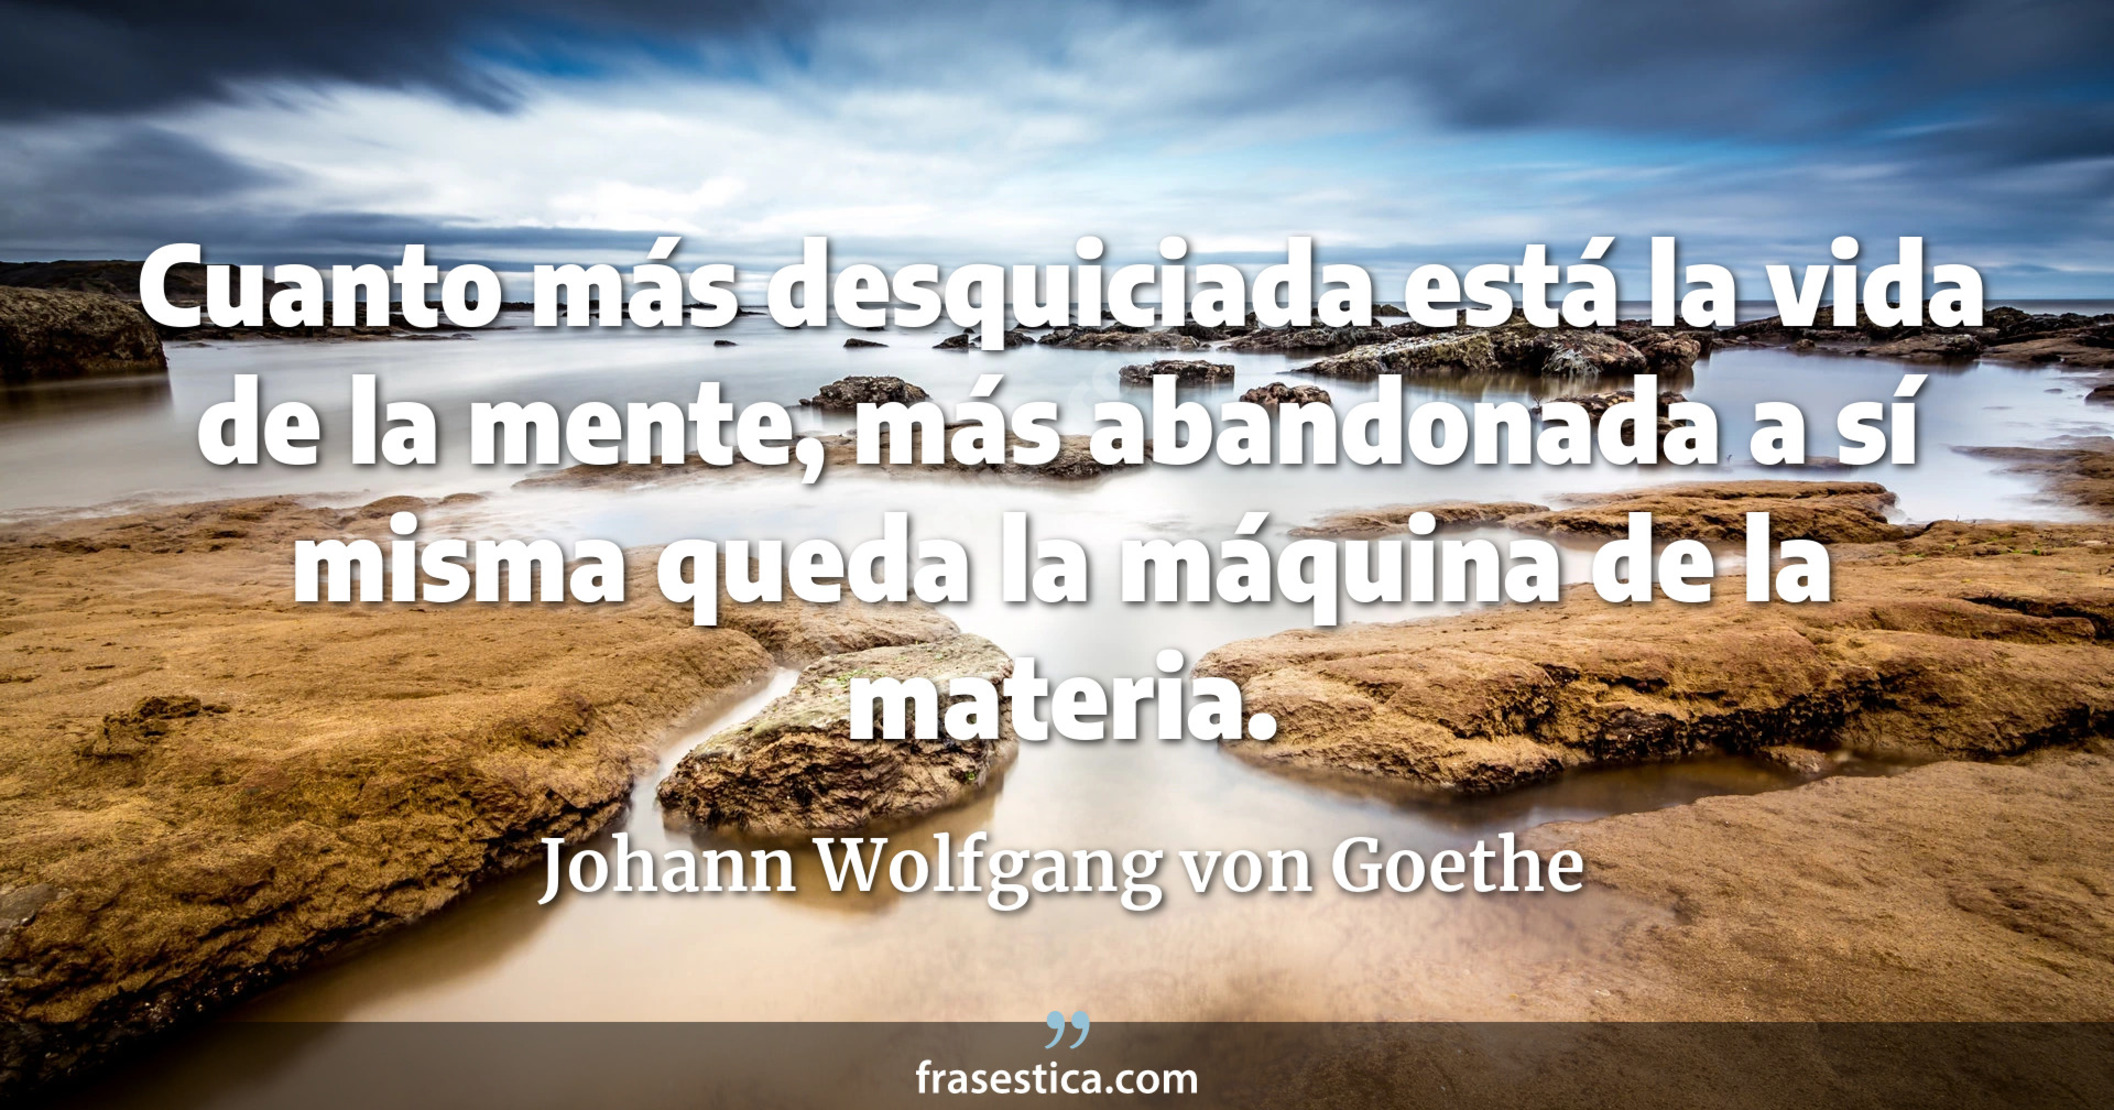 Cuanto más desquiciada está la vida de la mente, más abandonada a sí misma queda la máquina de la materia. - Johann Wolfgang von Goethe